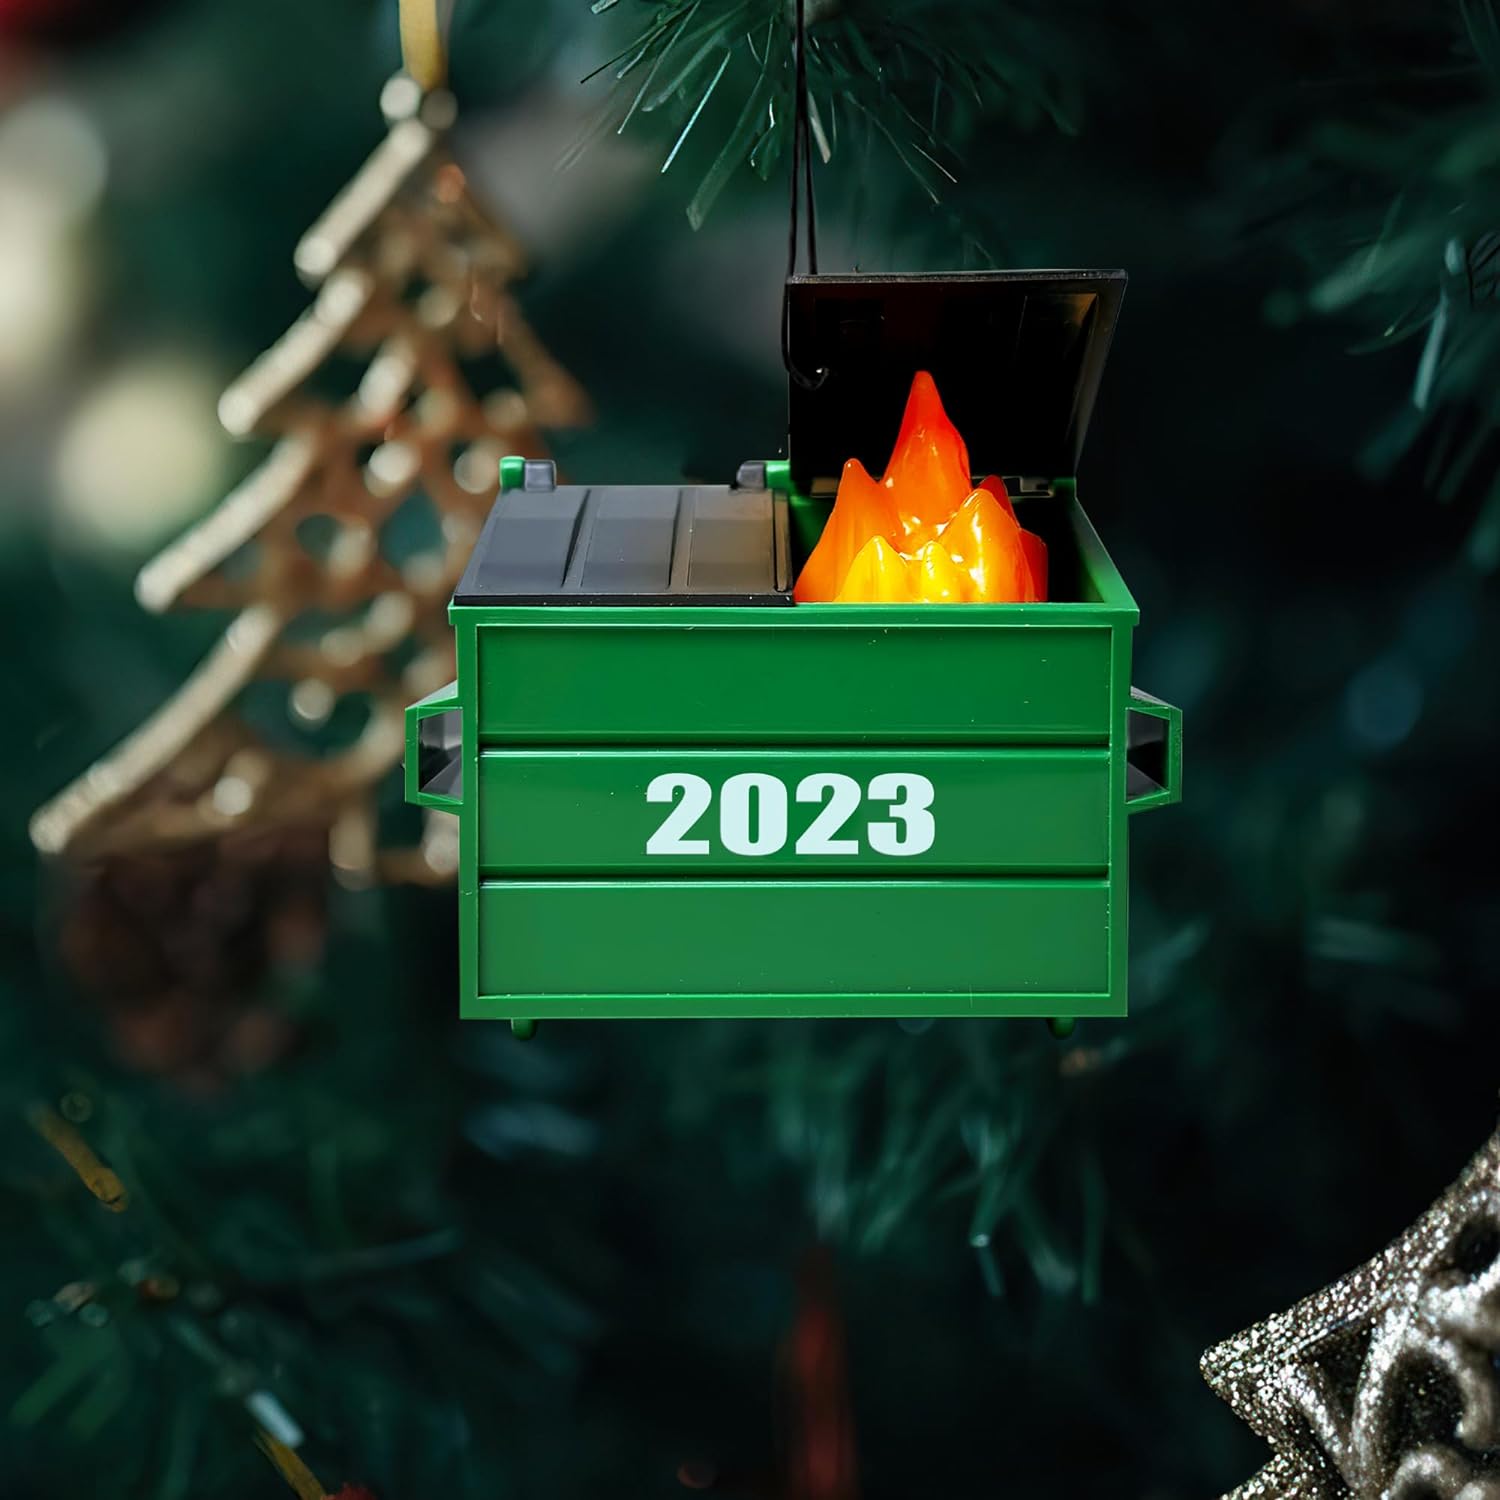 Dumpster Fire Ornament